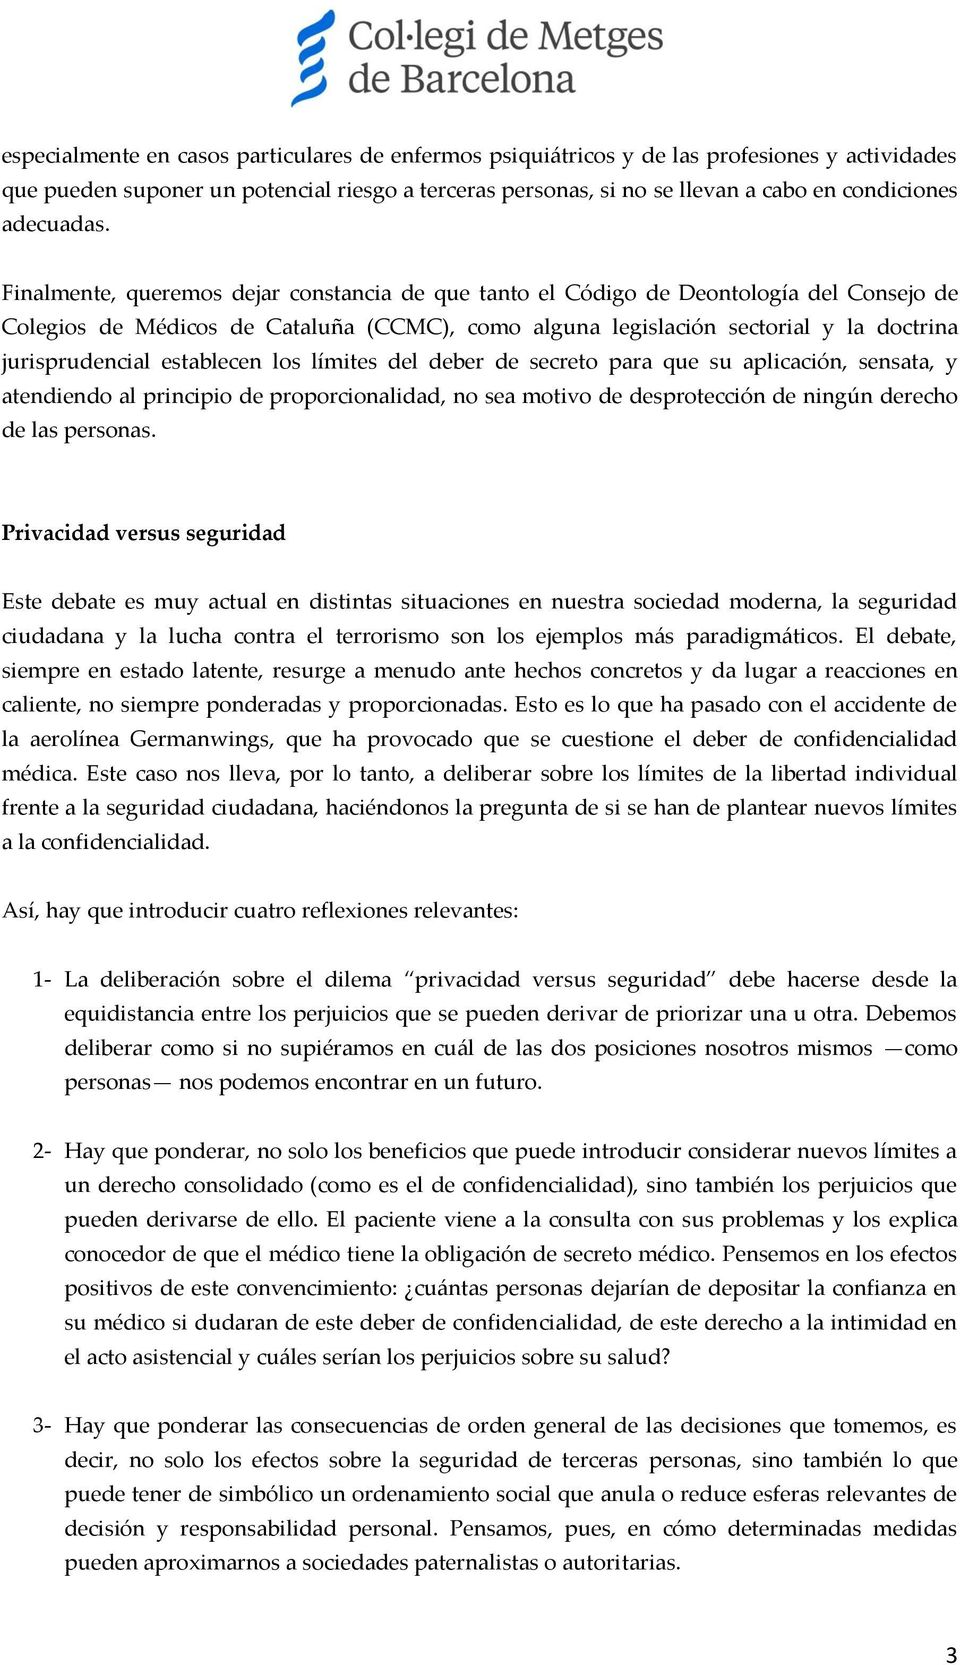 Finalmente, queremos dejar constancia de que tanto el Código de Deontología del Consejo de Colegios de Médicos de Cataluña (CCMC), como alguna legislación sectorial y la doctrina jurisprudencial